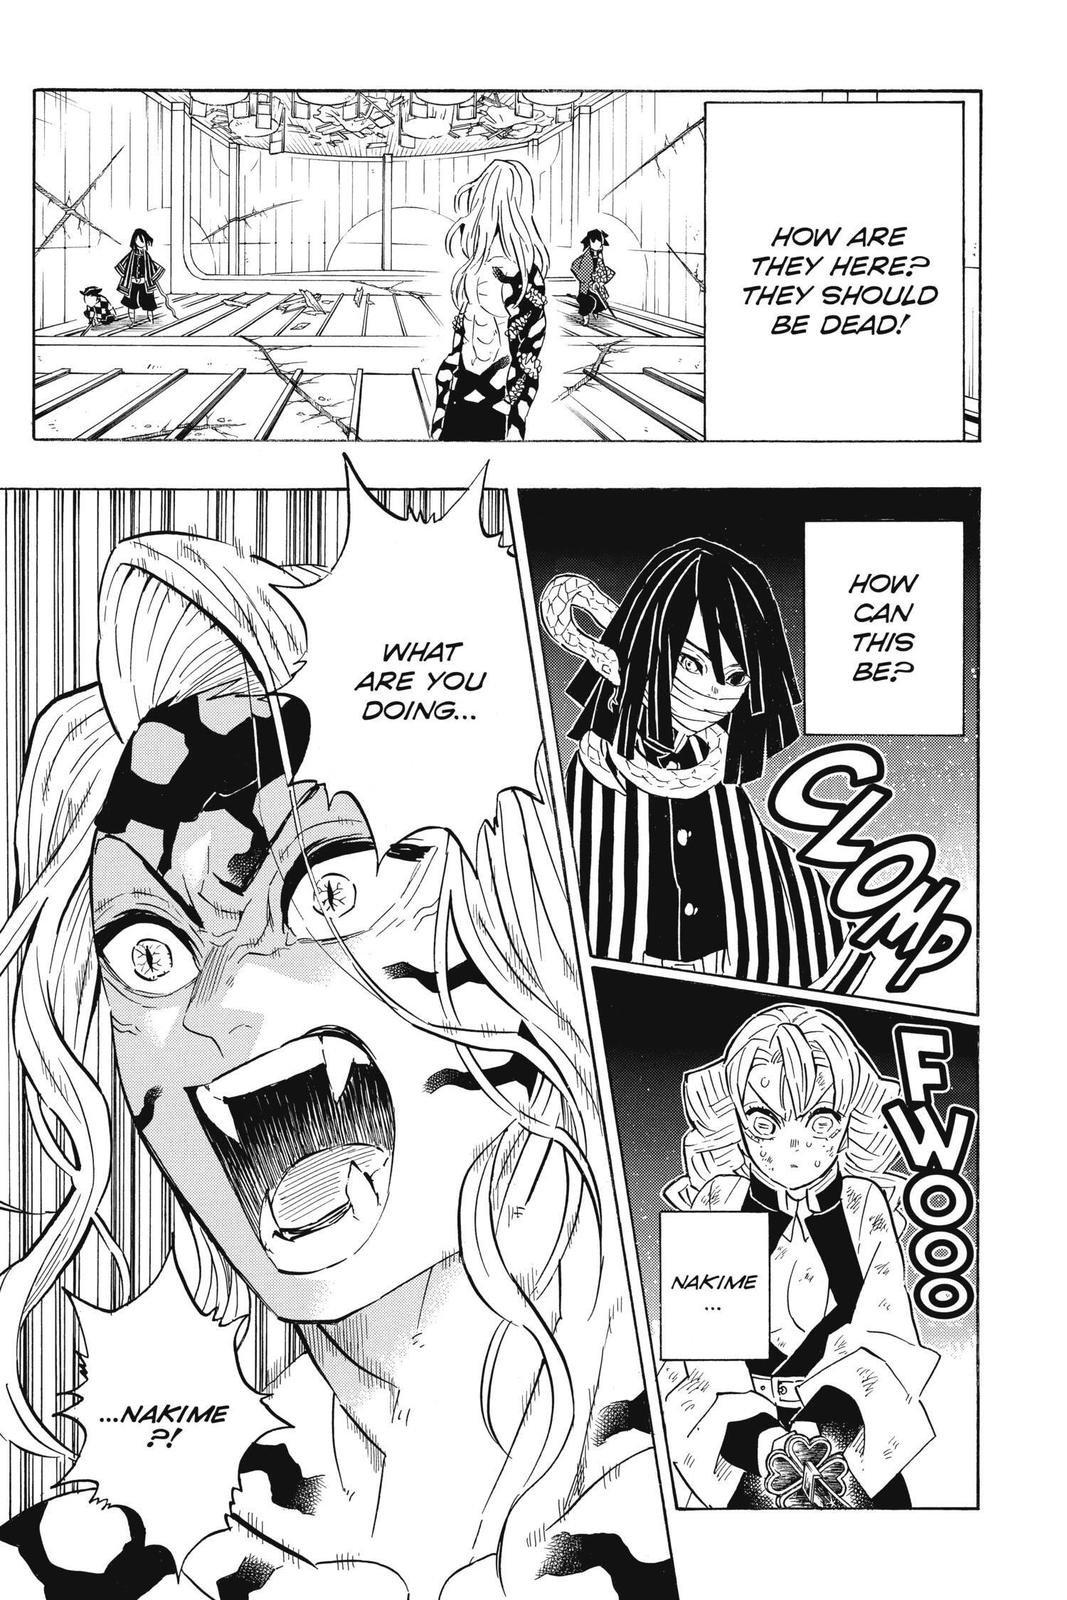 Demon Slayer Manga Manga Chapter - 182 - image 13